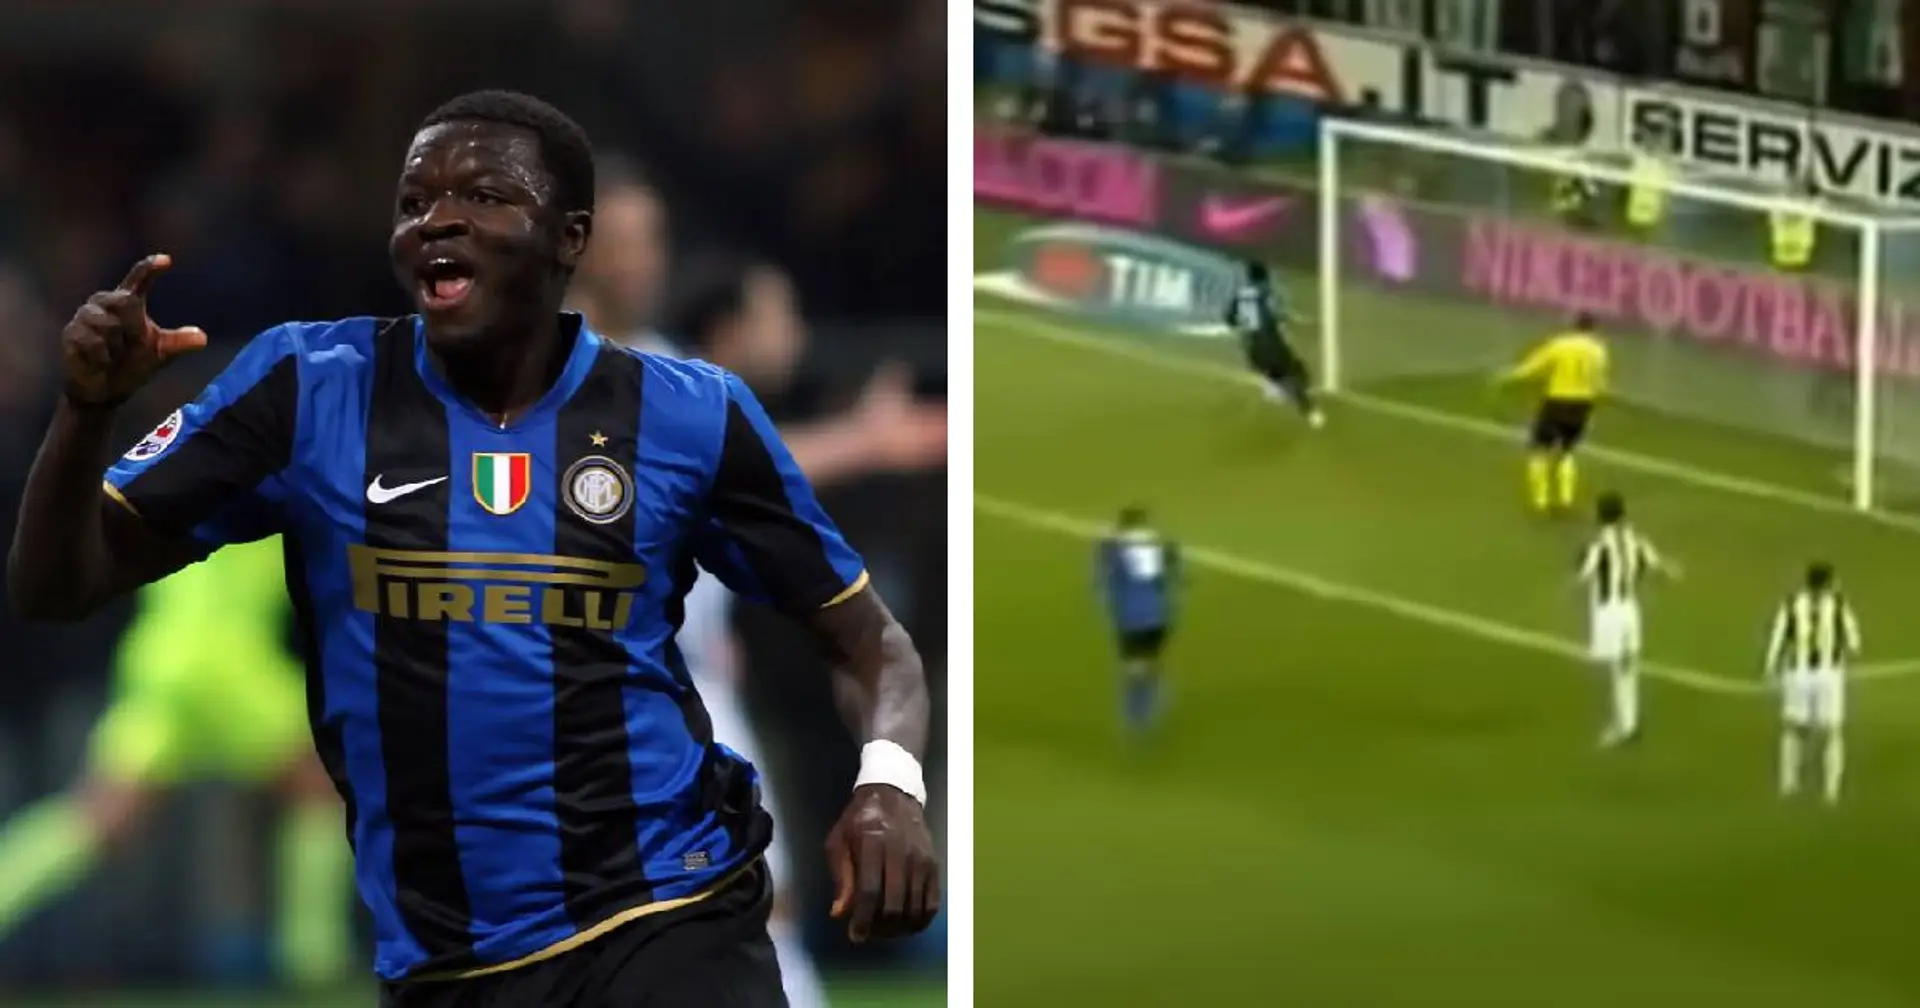 Sulley Muntari segna e l'Inter vola in classifica: esattamente 12 anni fa la vittoria nel Derby d'Italia